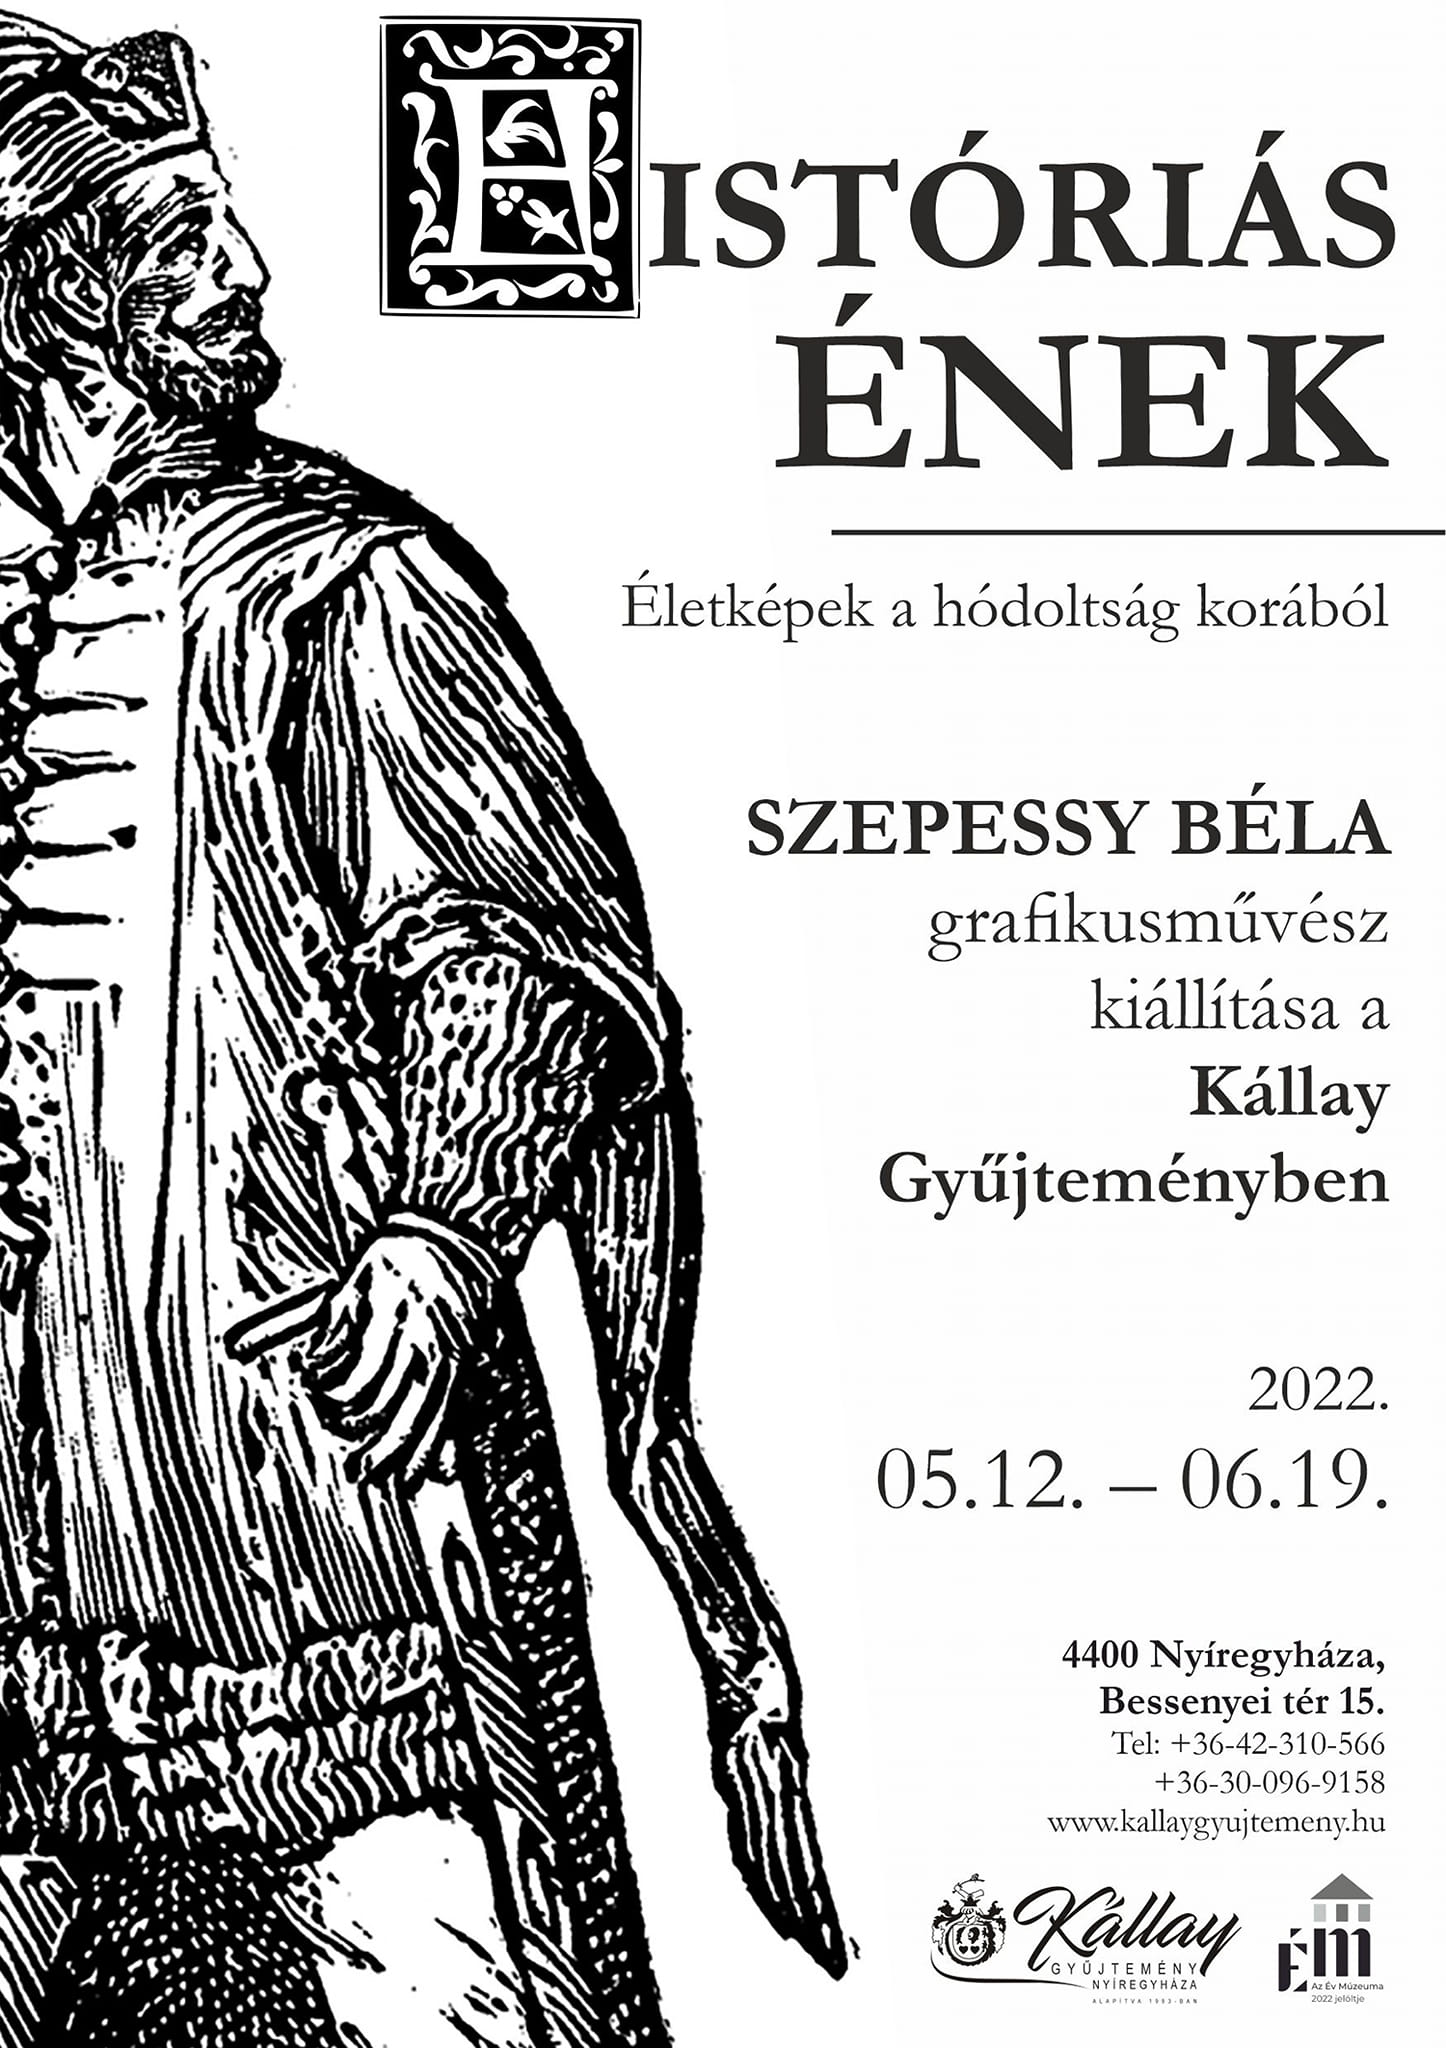 Szepessy Béla kiállítása Nyíregyháza